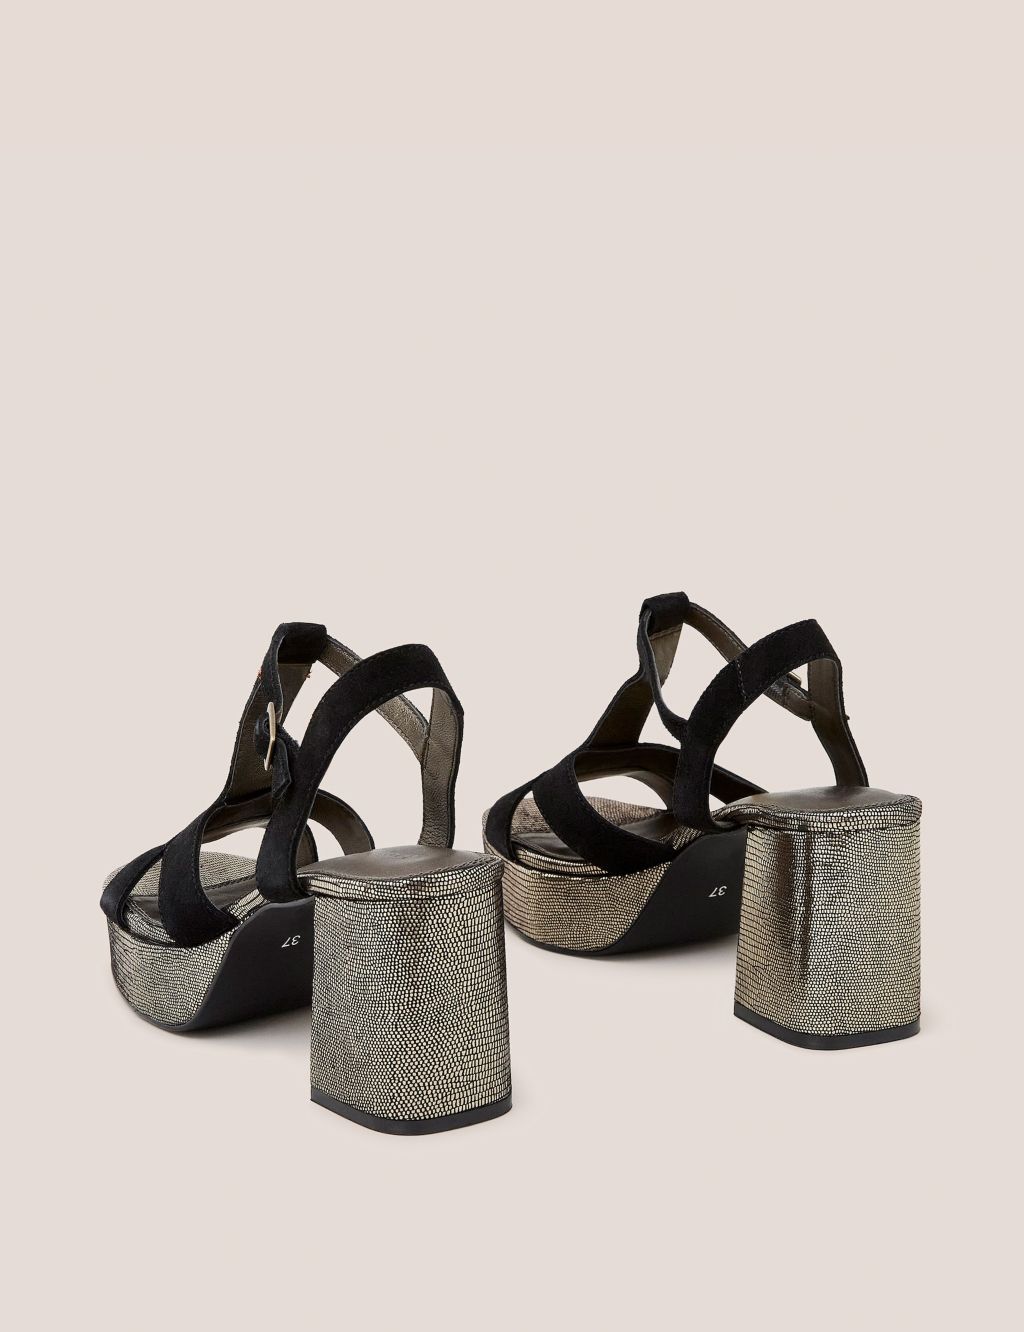 Suede Metallic Platform Heeled Sandals image 3